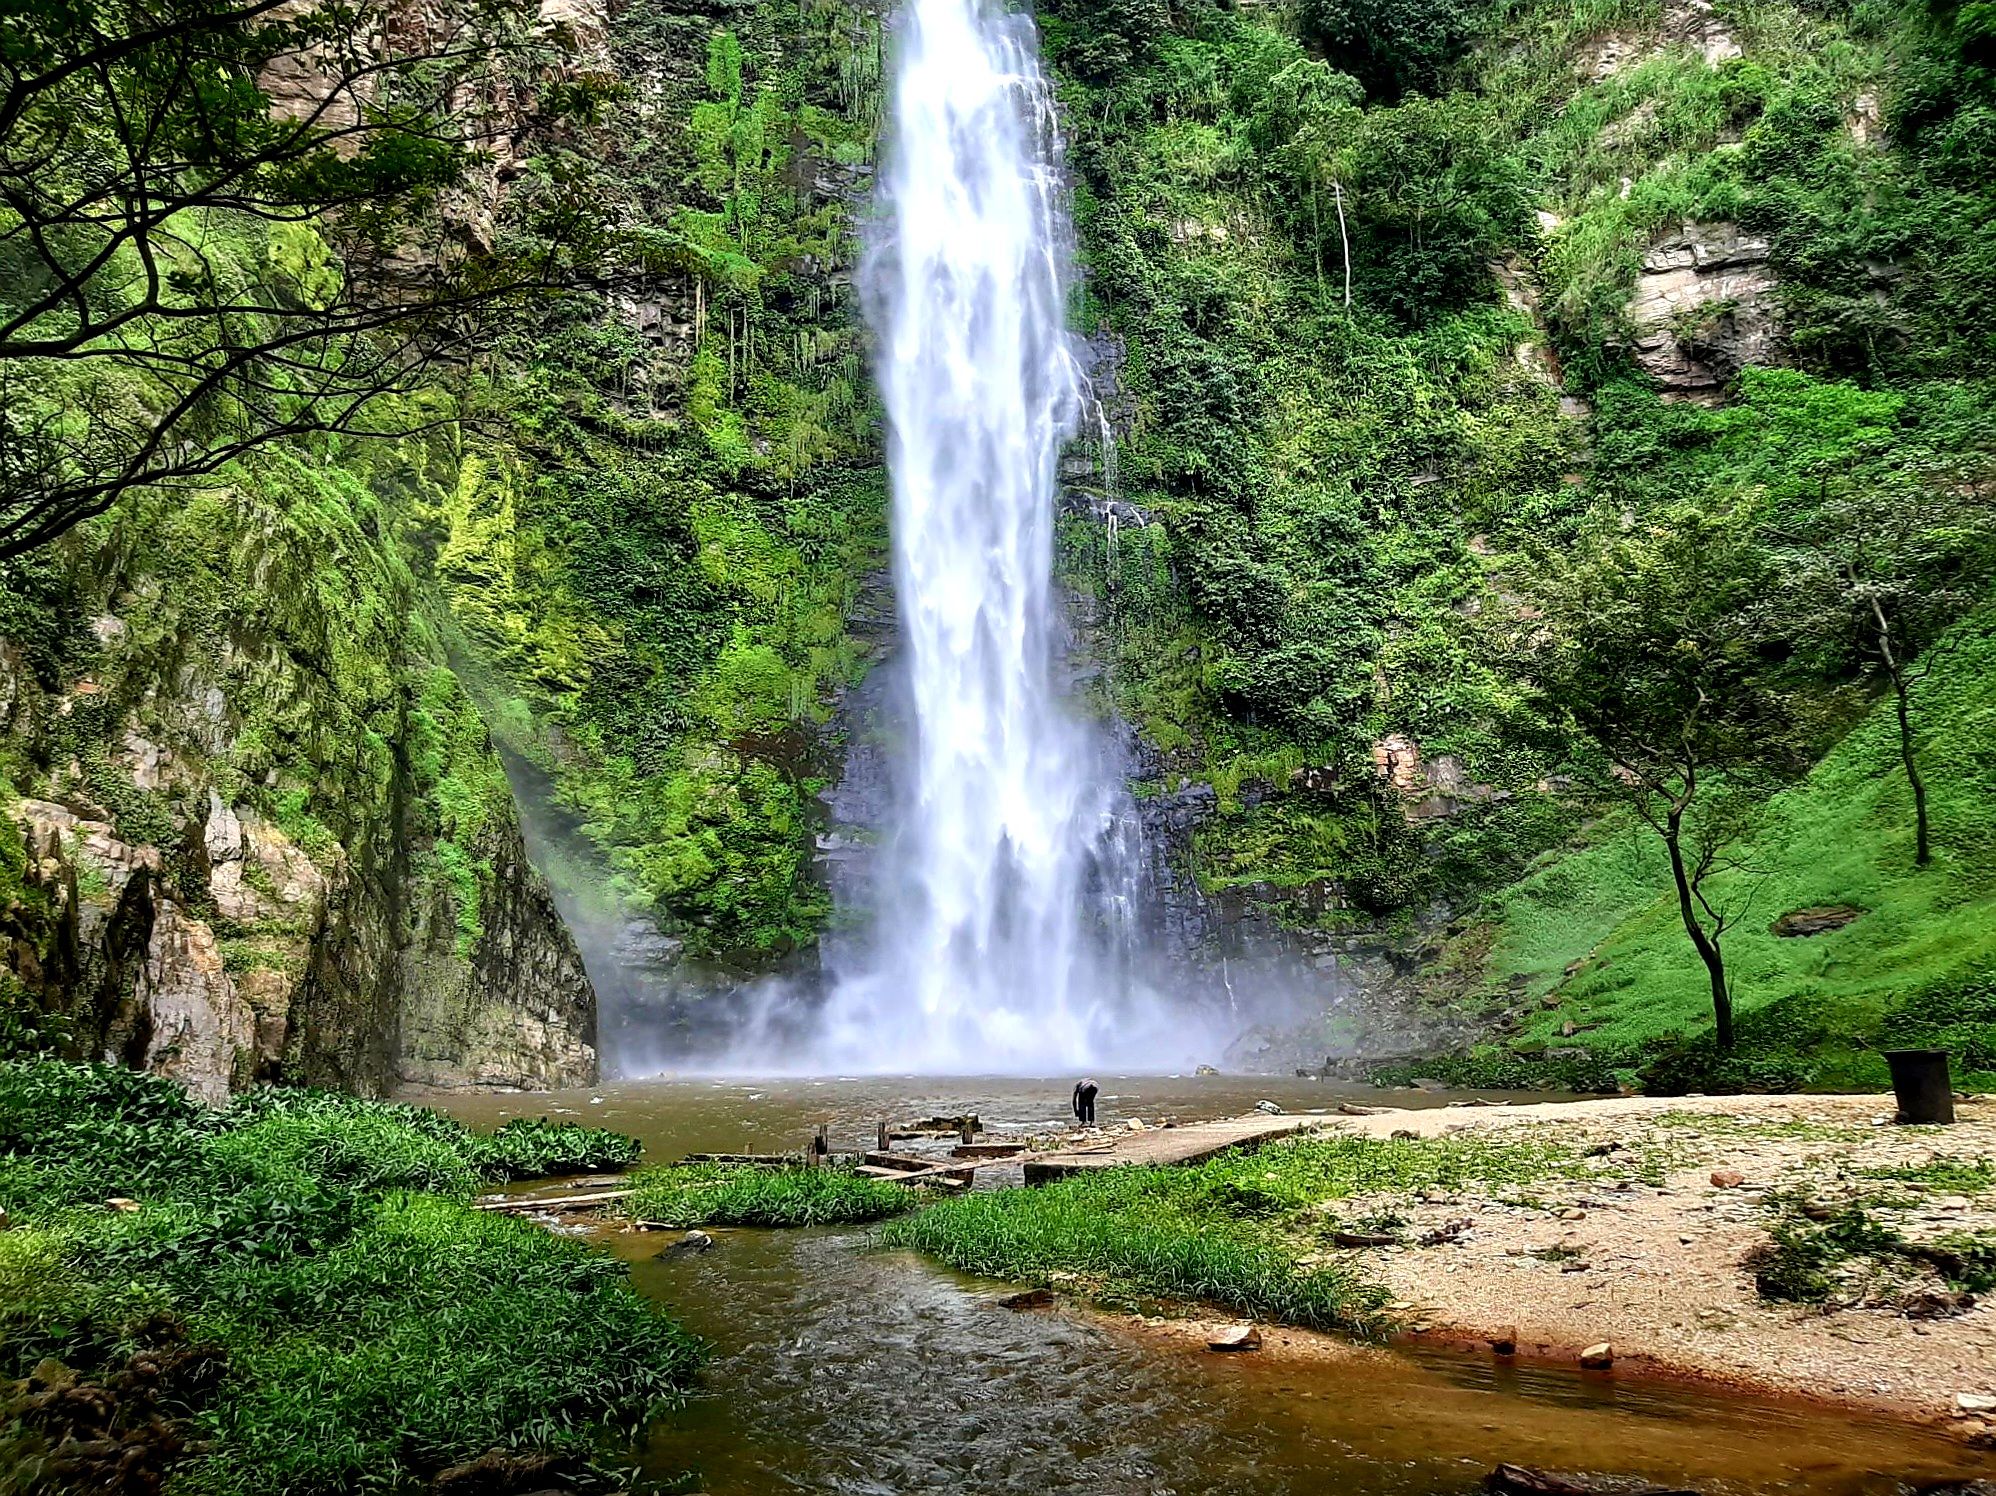 Caption; Wli waterfalls at a closer range. shot by LG @shola4sure